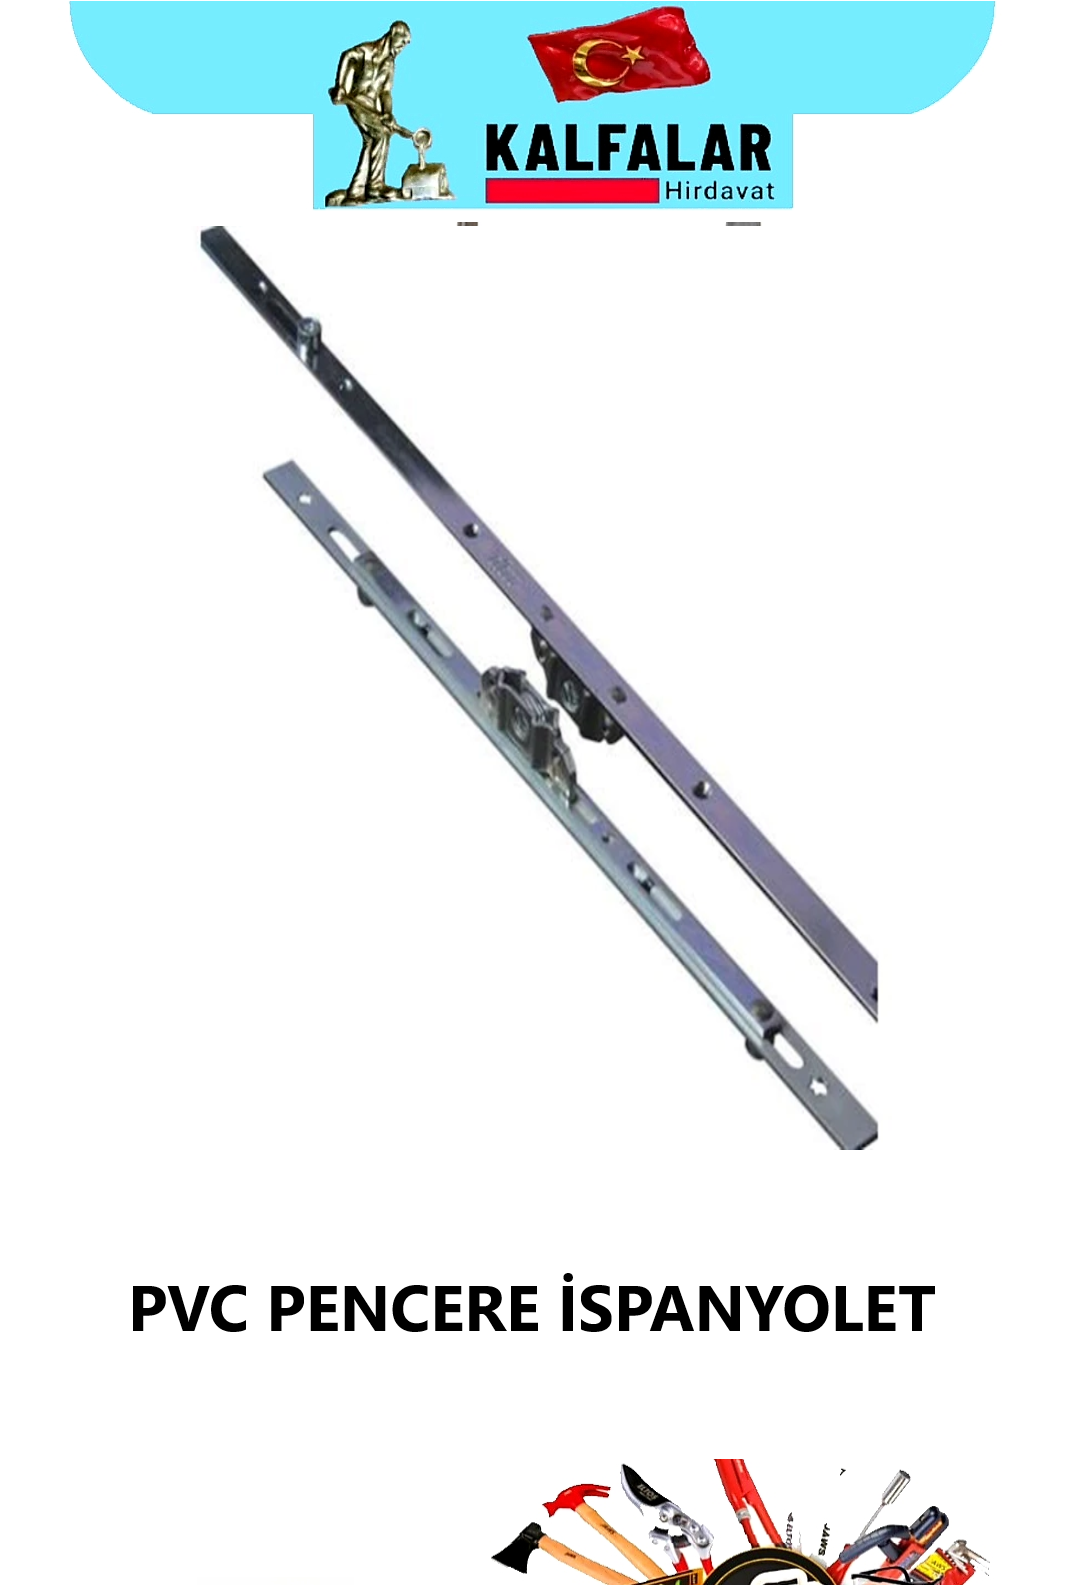 PVC İSPANYOLET PENCERE 140 MM